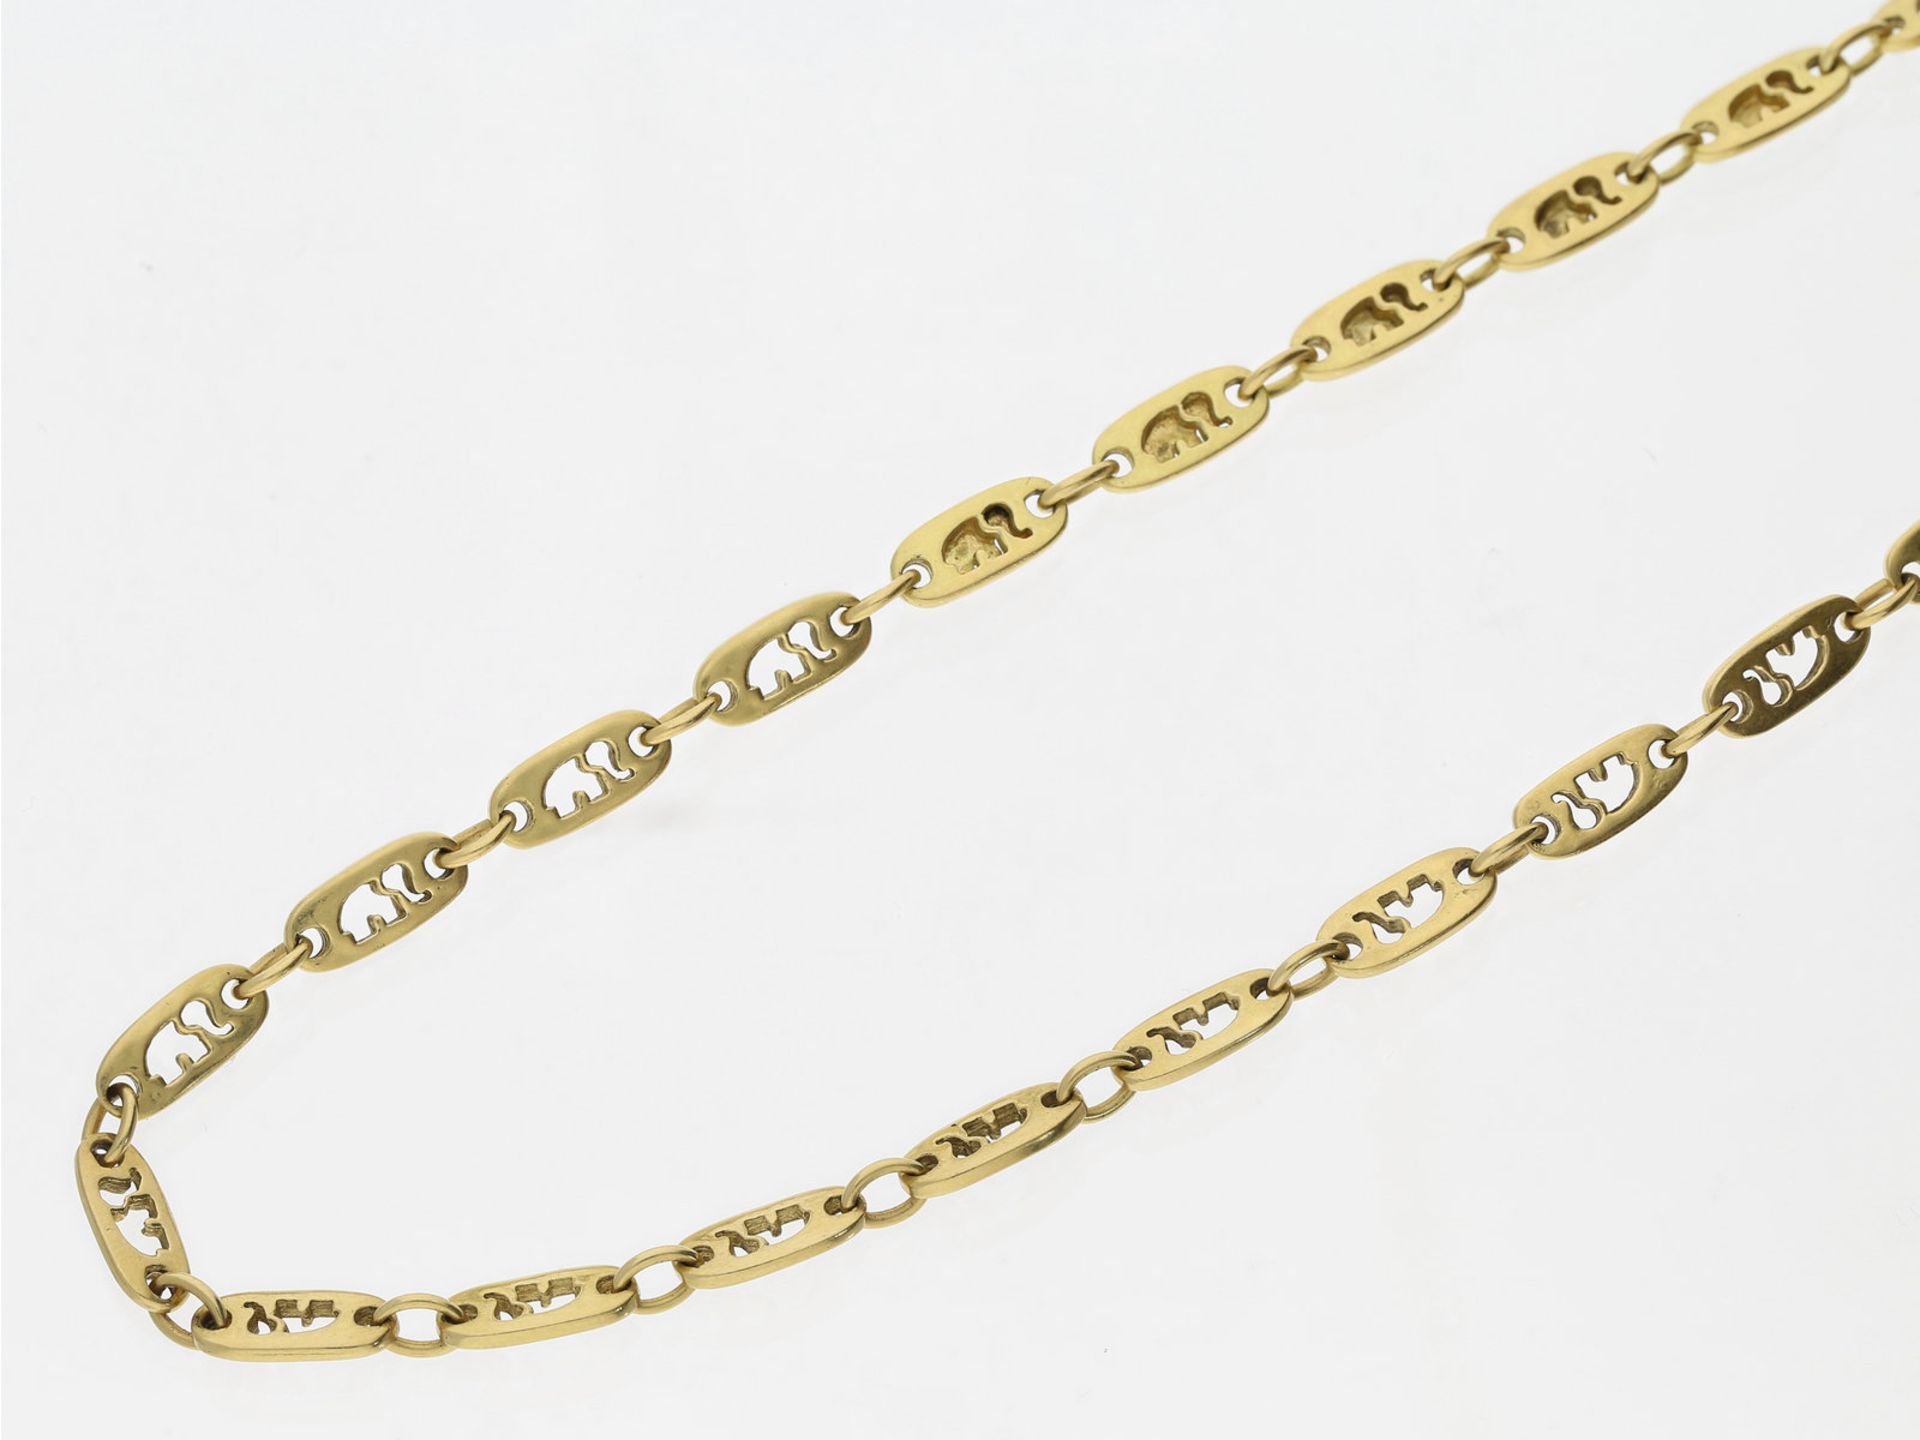 Kette/Collier: sehr lange und ausgefallene Goldkette mit Elefanten-Motiven, 18K GoldCa. 82,5cm lang,